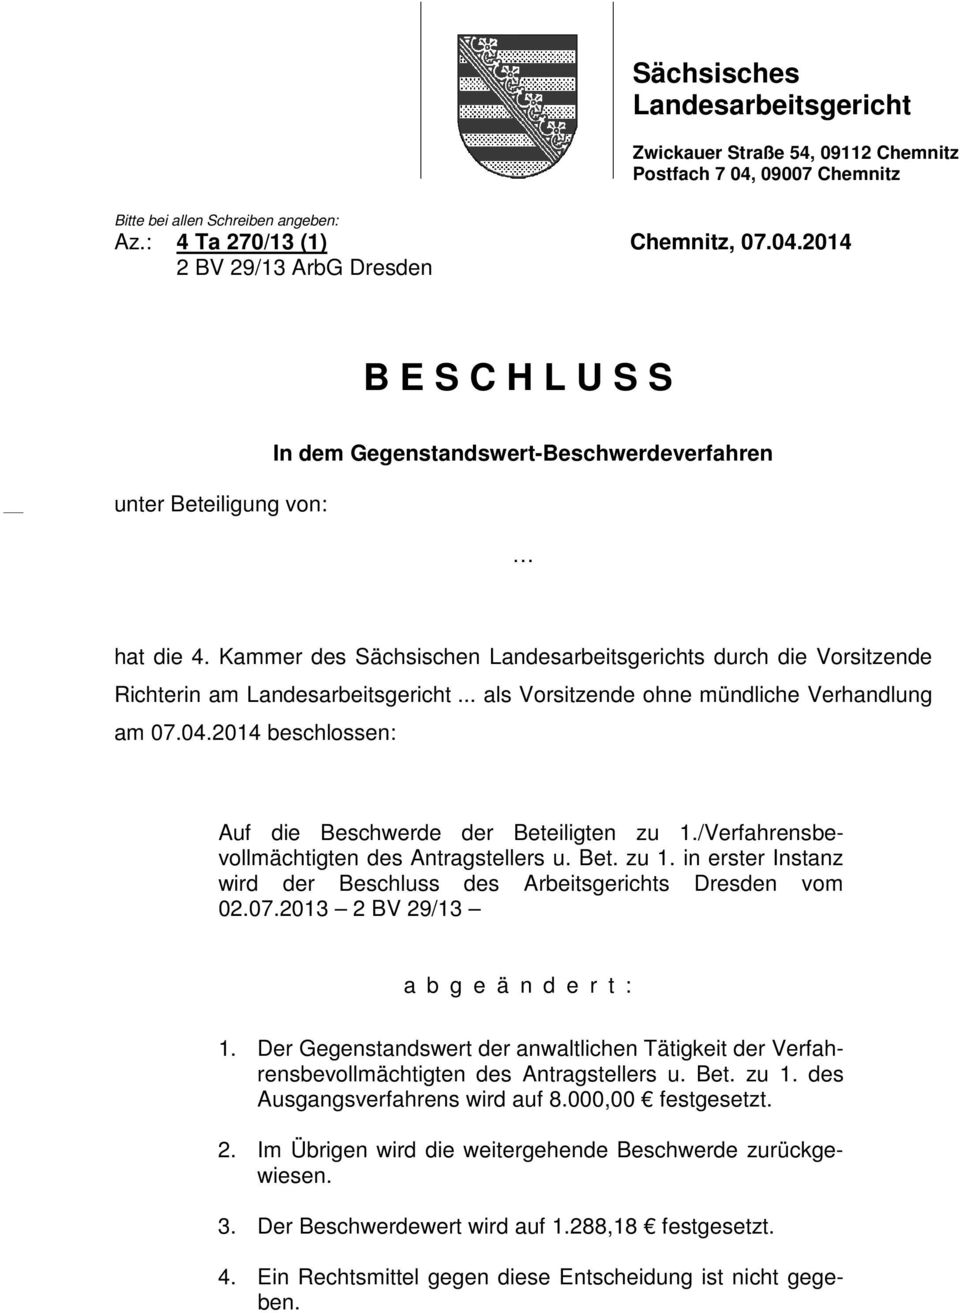 Kammer des Sächsischen Landesarbeitsgerichts durch die Vorsitzende Richterin am Landesarbeitsgericht... als Vorsitzende ohne mündliche Verhandlung am 07.04.